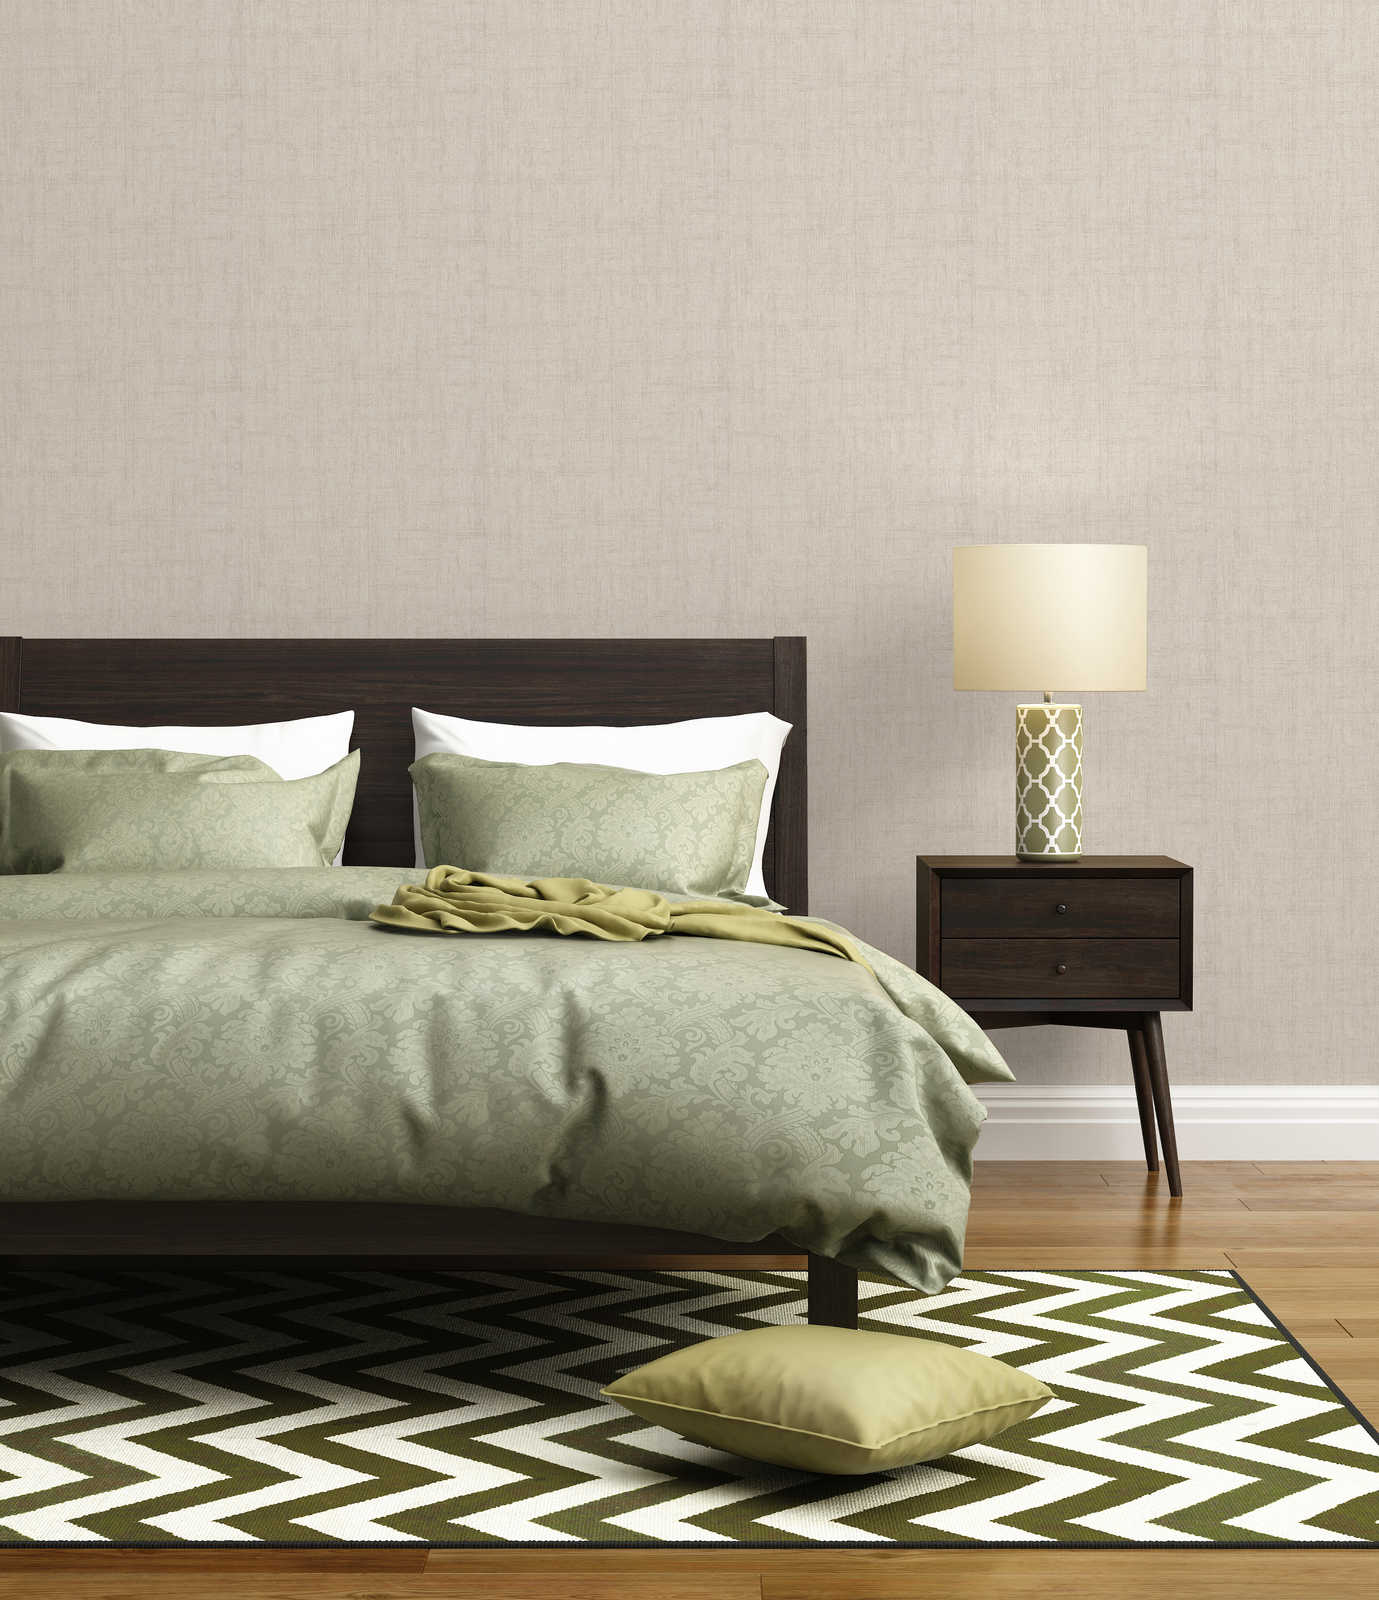             Linen look wallpaper with rustic texture design - cream
        